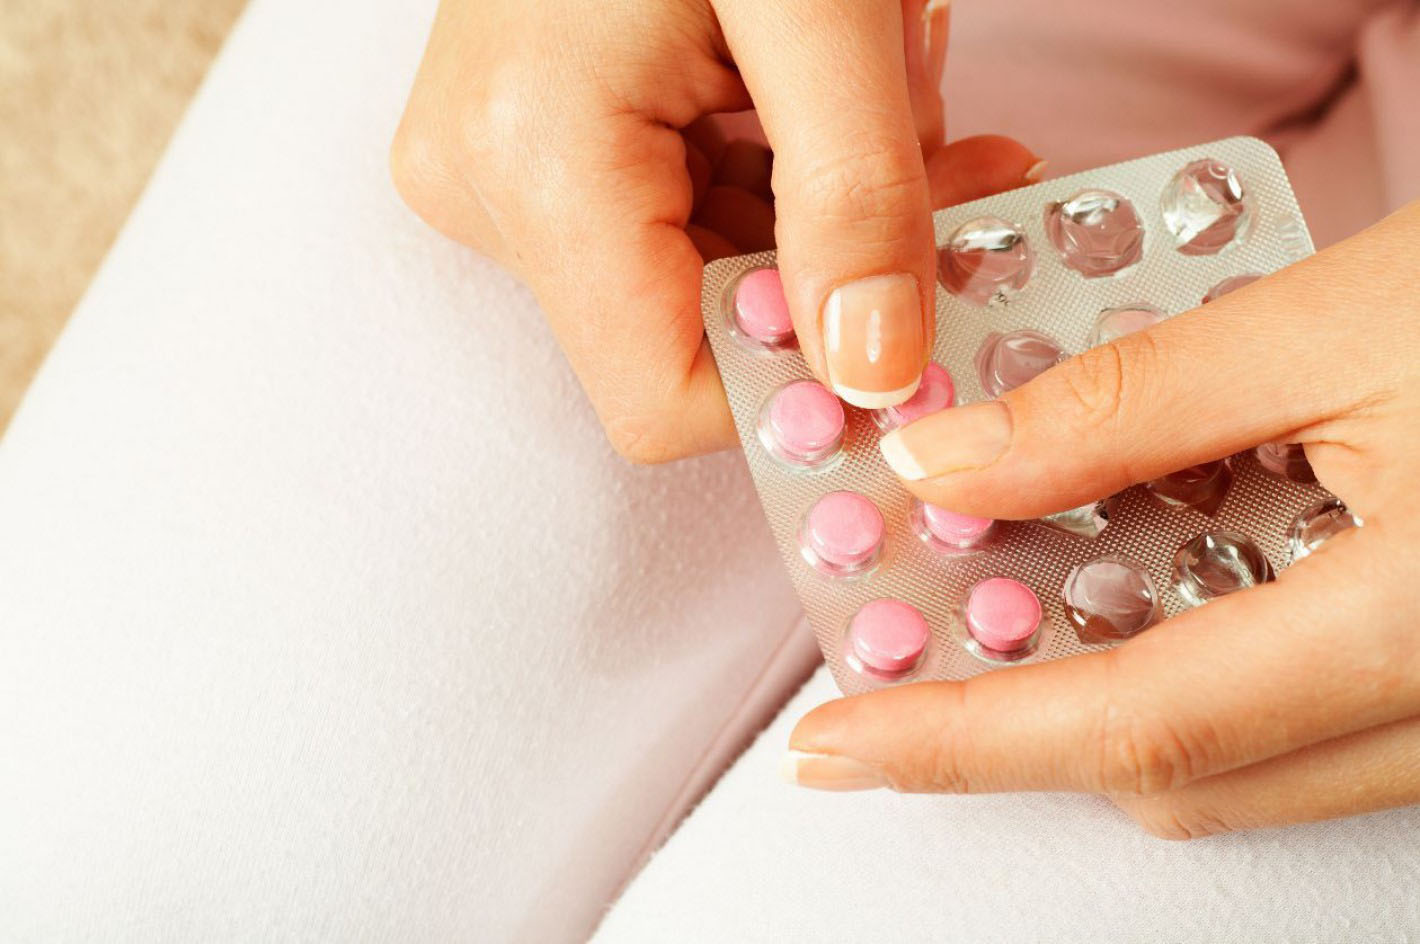 Se trata de una nueva pastilla anticonceptiva que regula el período menstrual para que se manifieste solo 4 veces al año